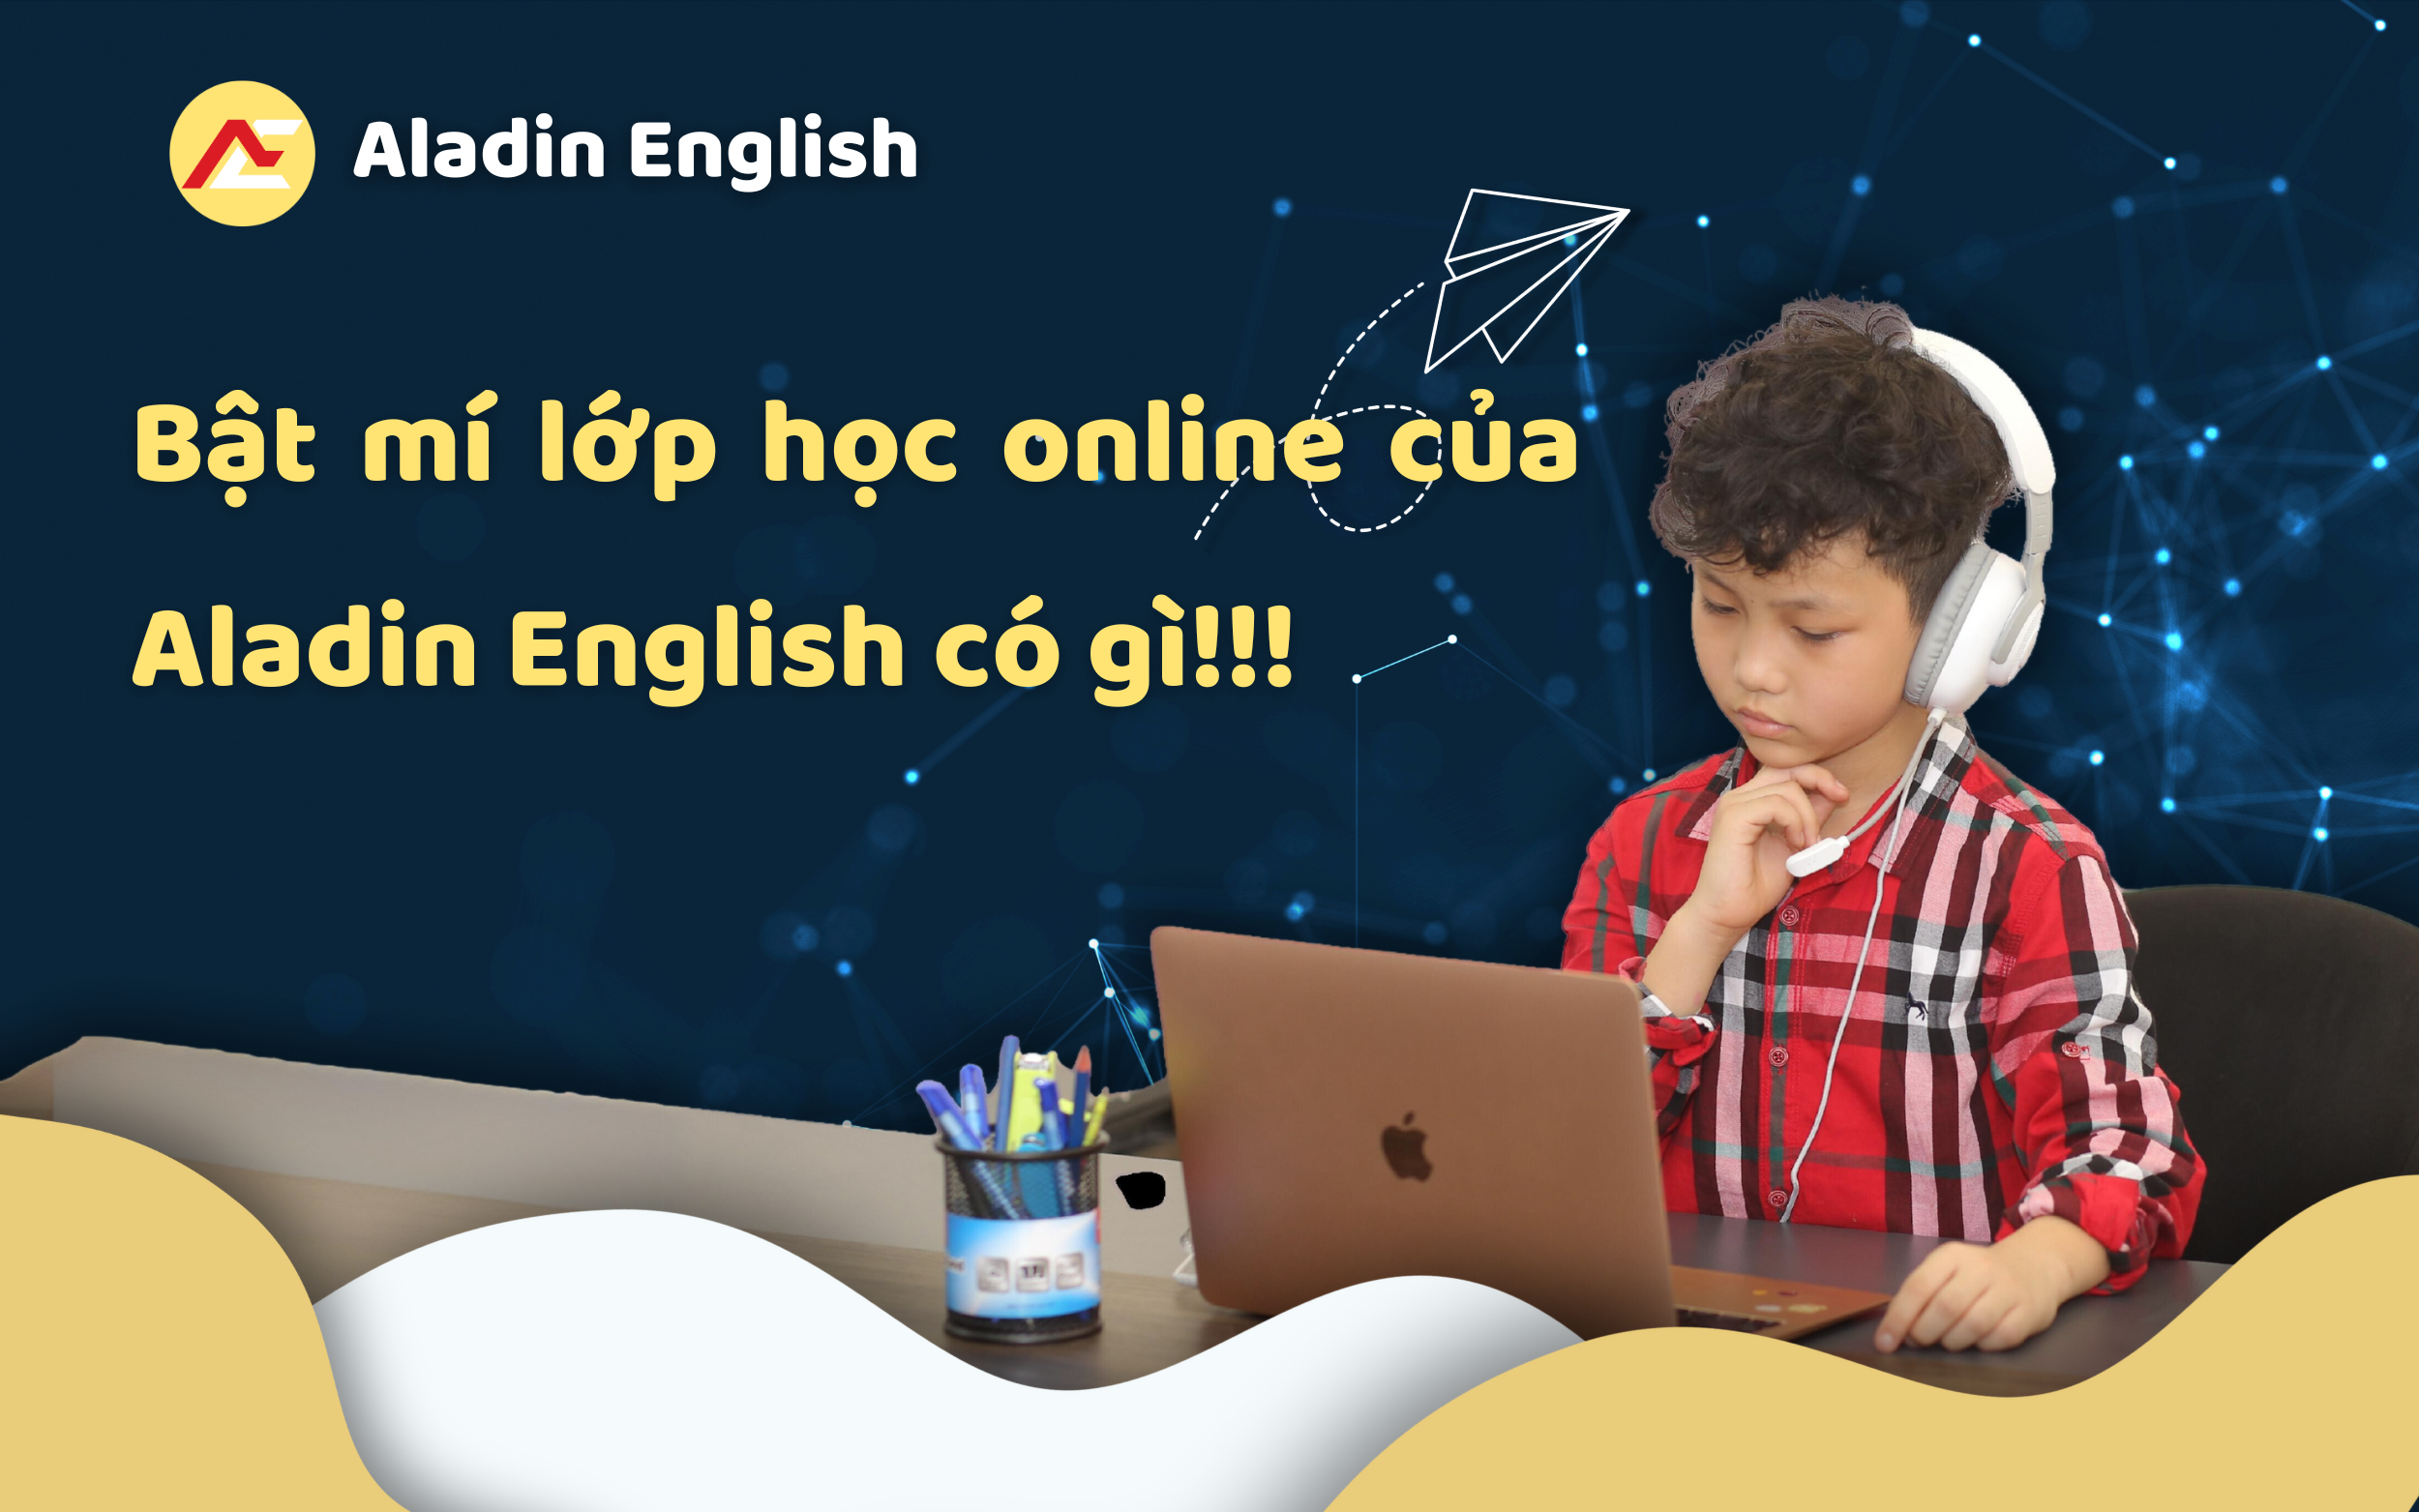 Lớp học online tại Aladin English có gì?